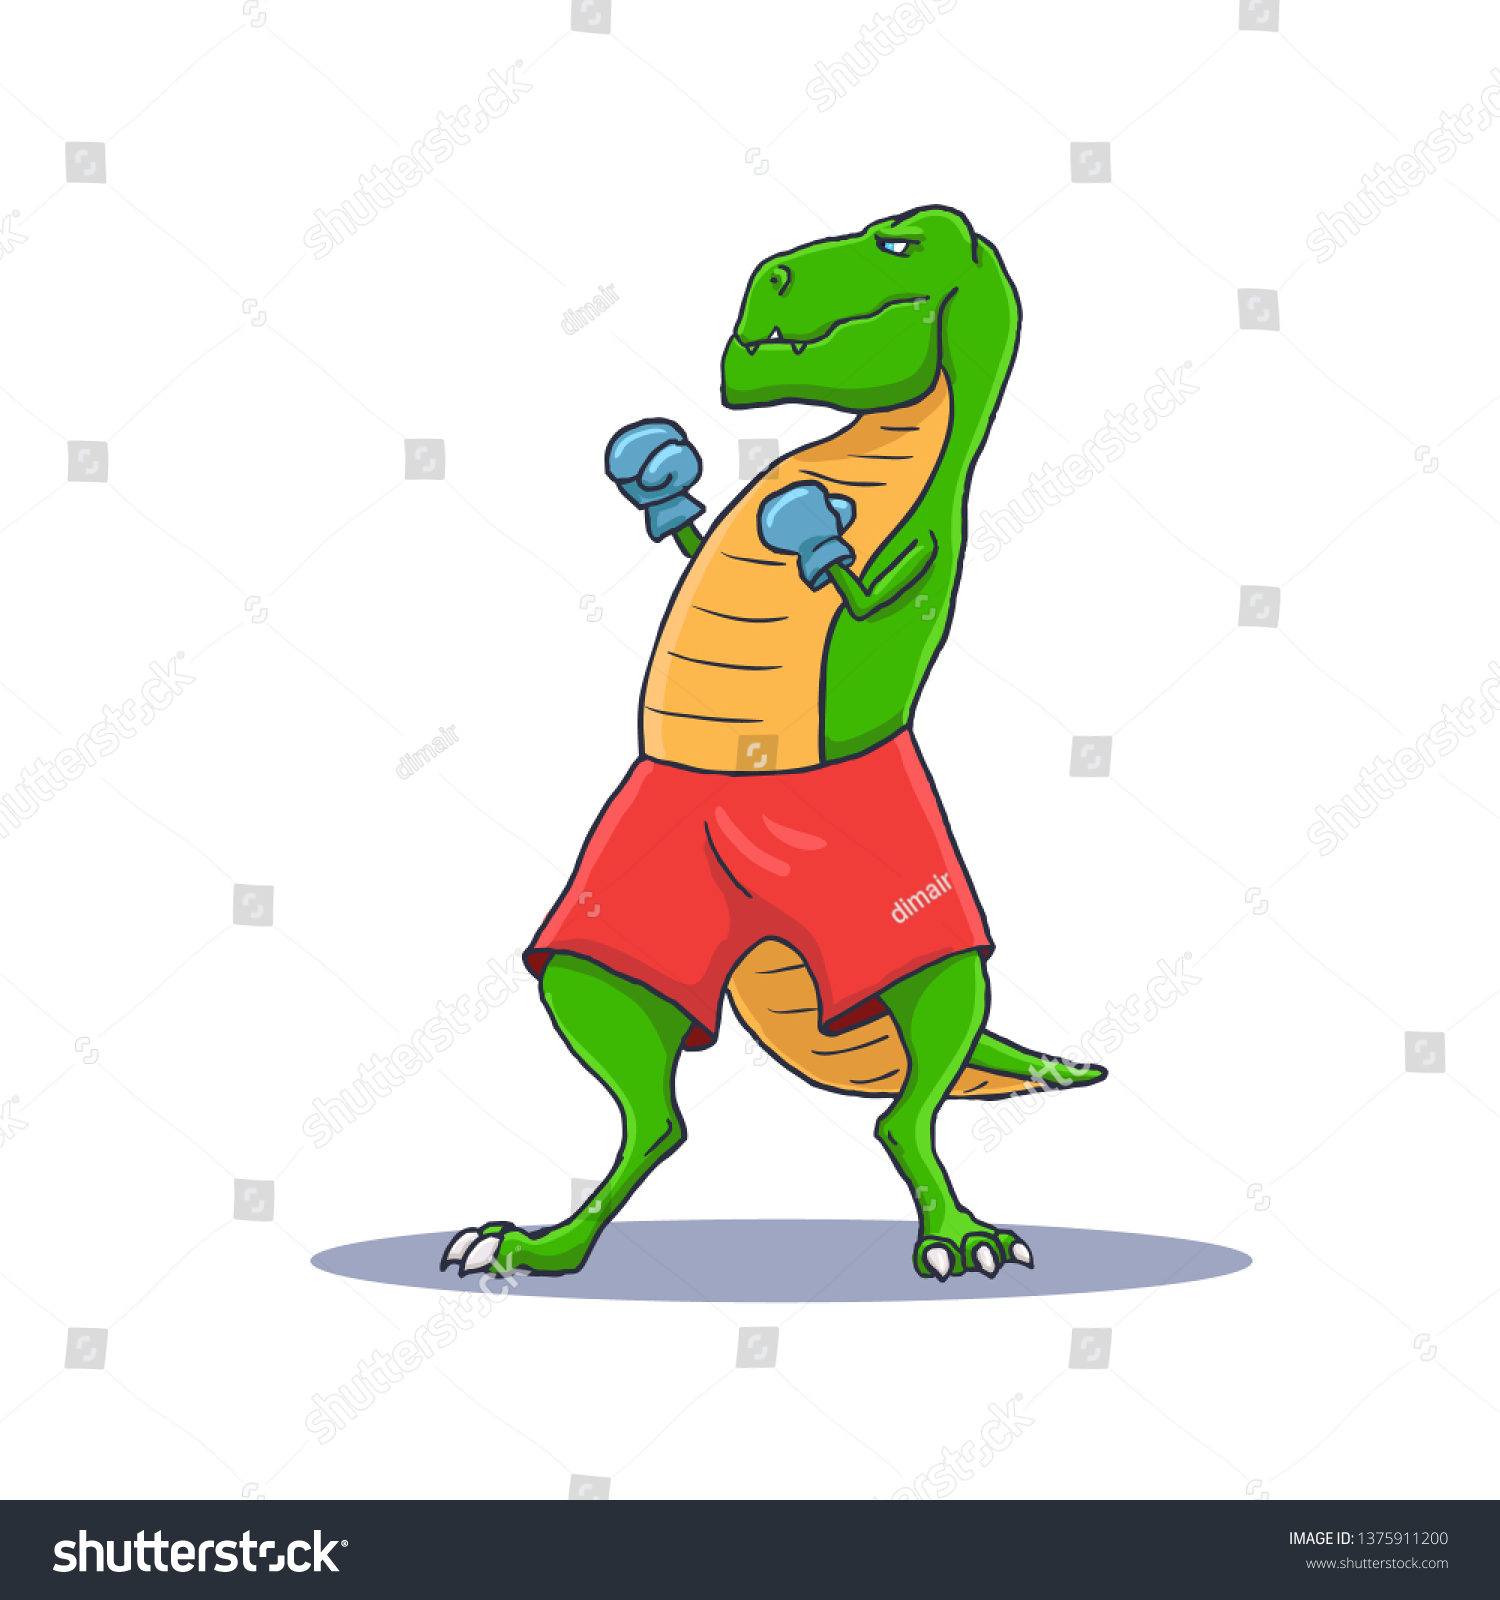 stock-vector-cartoon-t-rex-dinosaur-boxing-with-gloves-tyrannosaurus-vector-illustration-1375911200.jpg